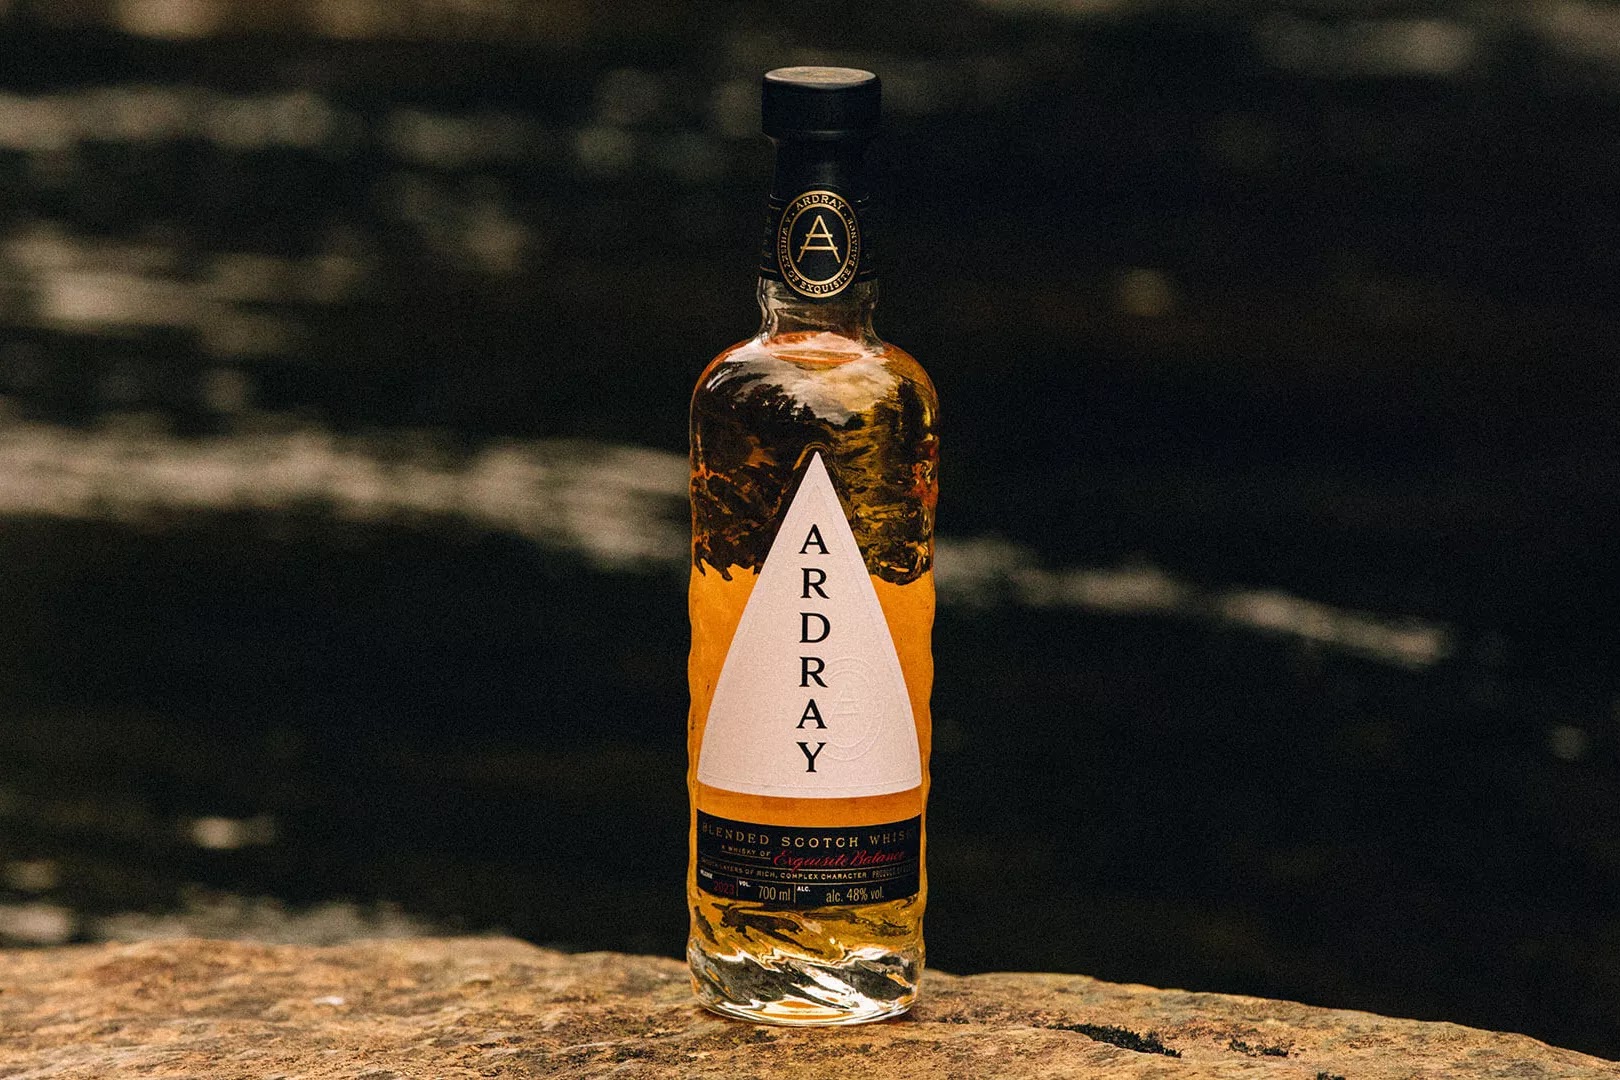 Ardray Blended Scotch Whisky - nowość od Beam Suntory